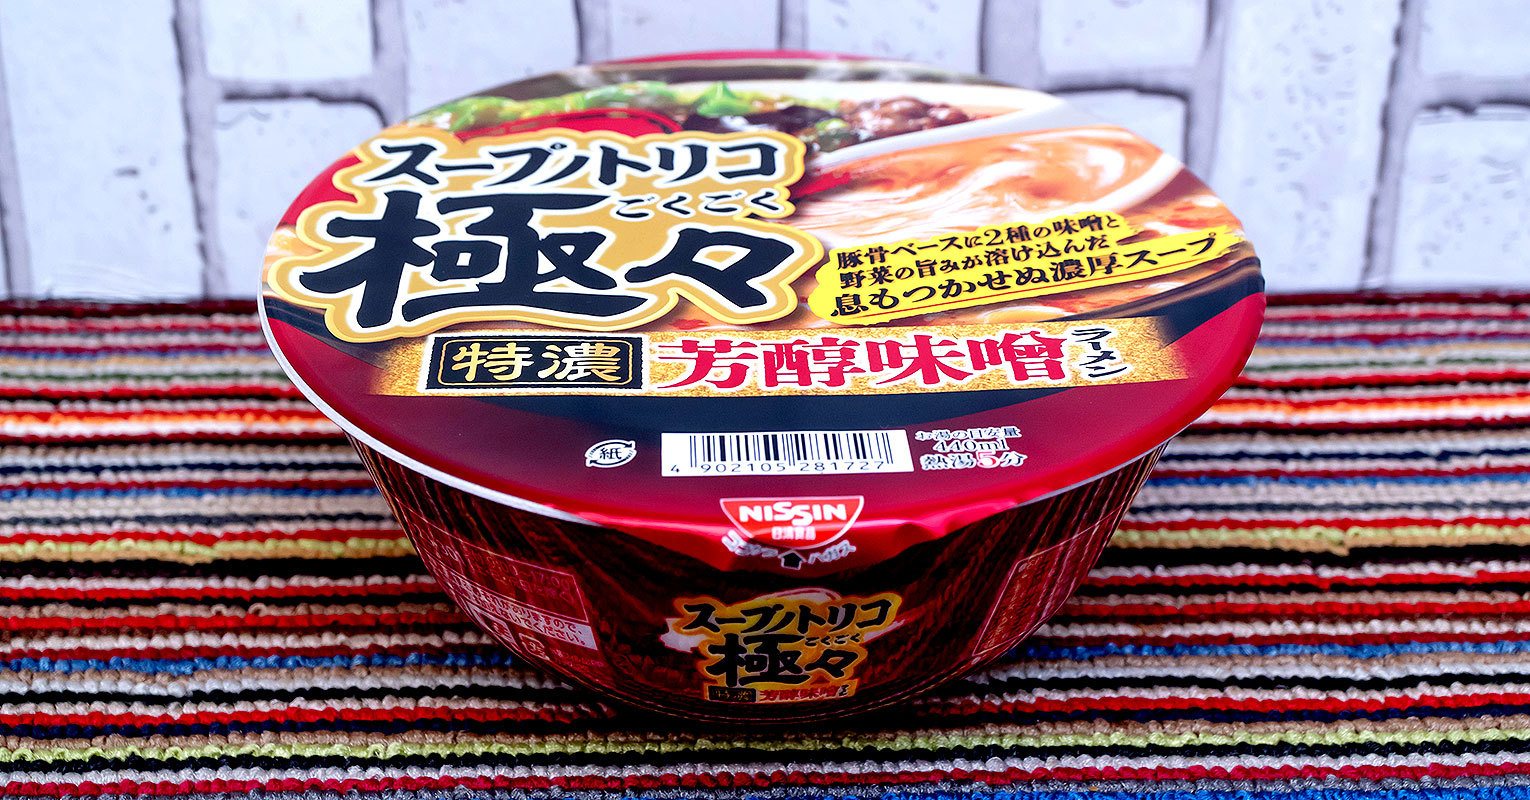 【イオン】恒例の高級カップ麺が生まれ変わった！「スープノトリコ 極々特濃芳醇味噌ラーメン」を実食レビュー